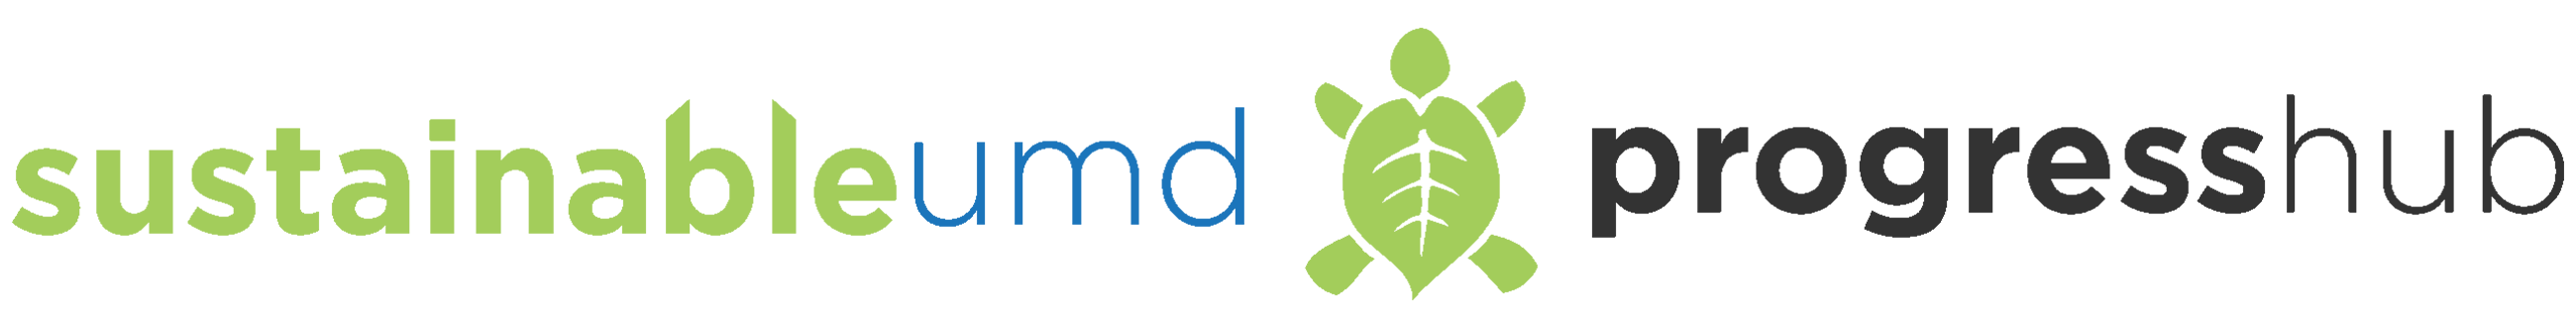 Office of Sustainability logo